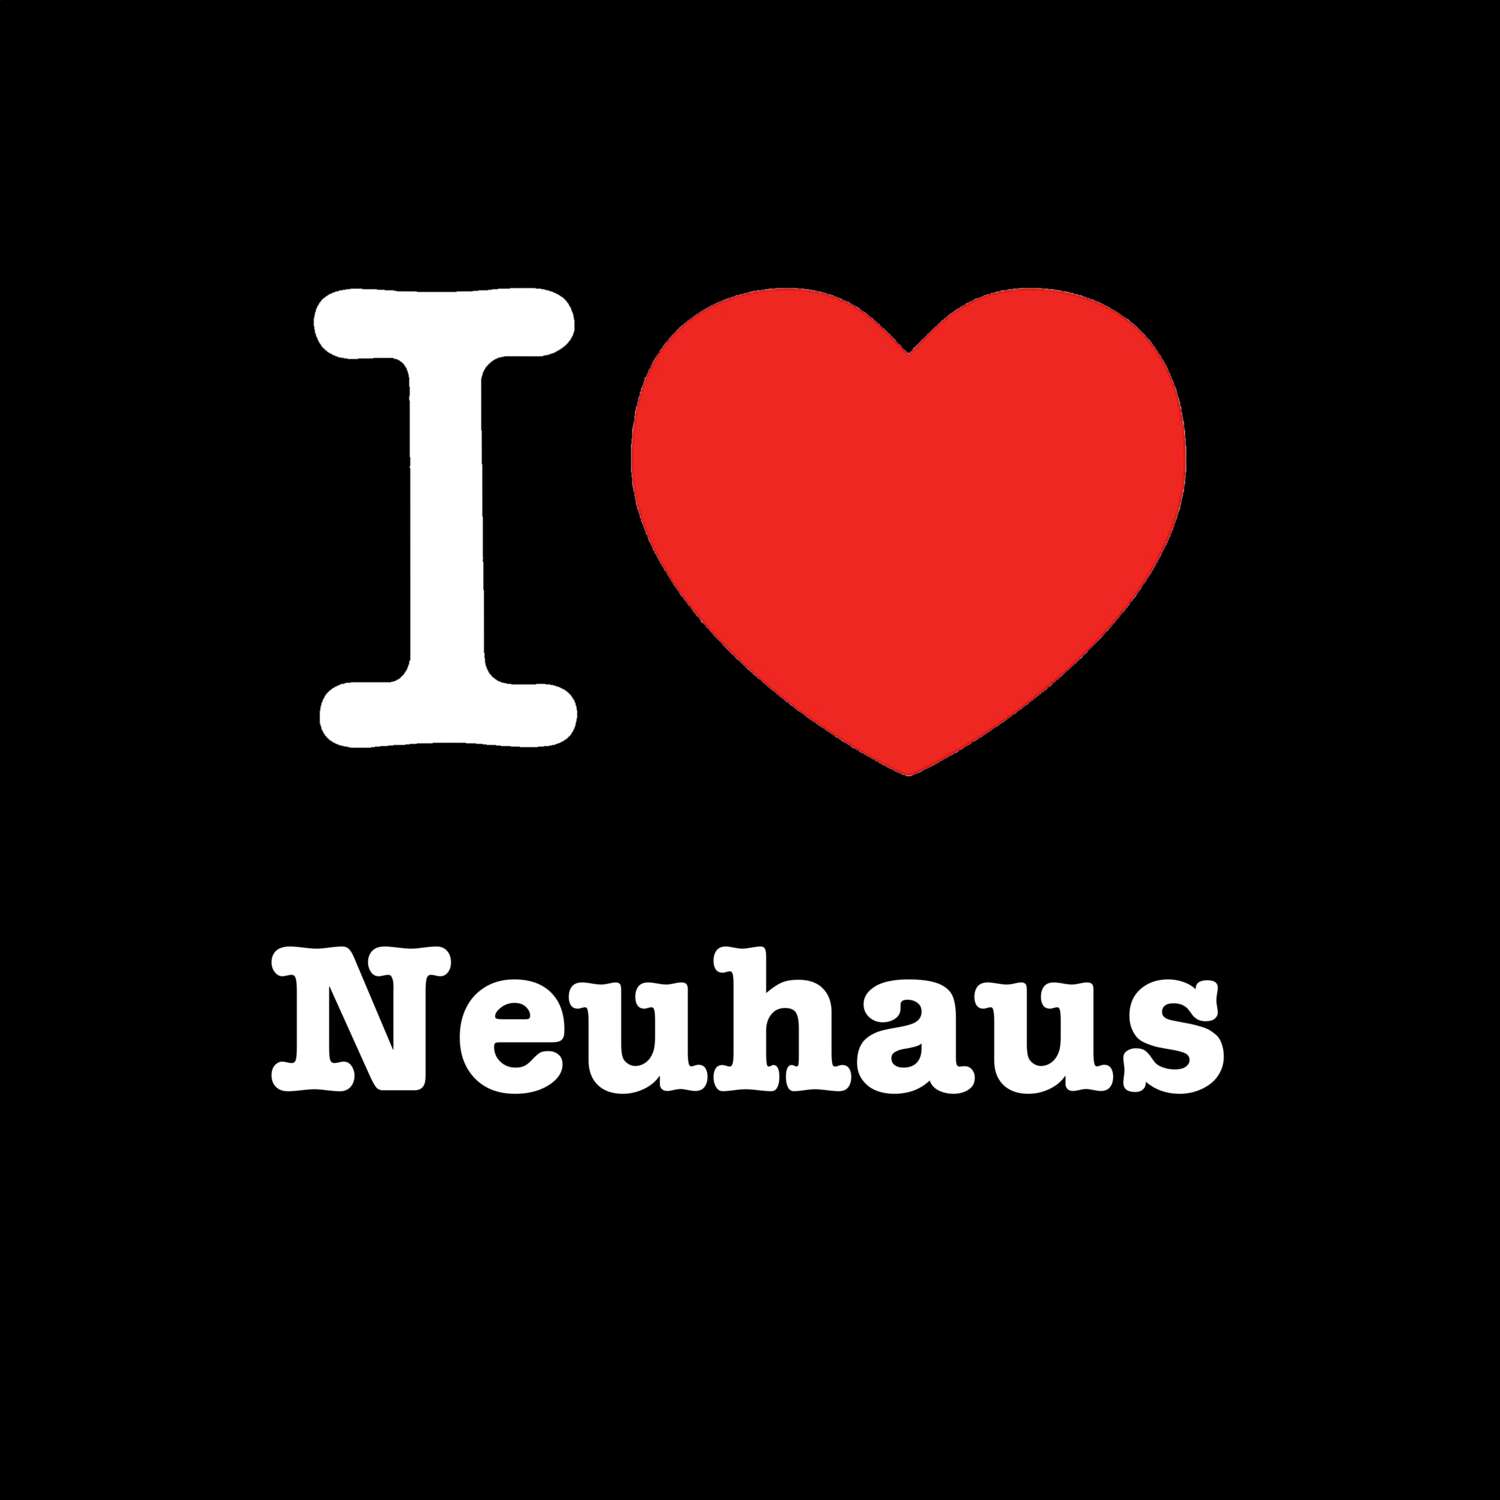 Neuhaus T-Shirt »I love«